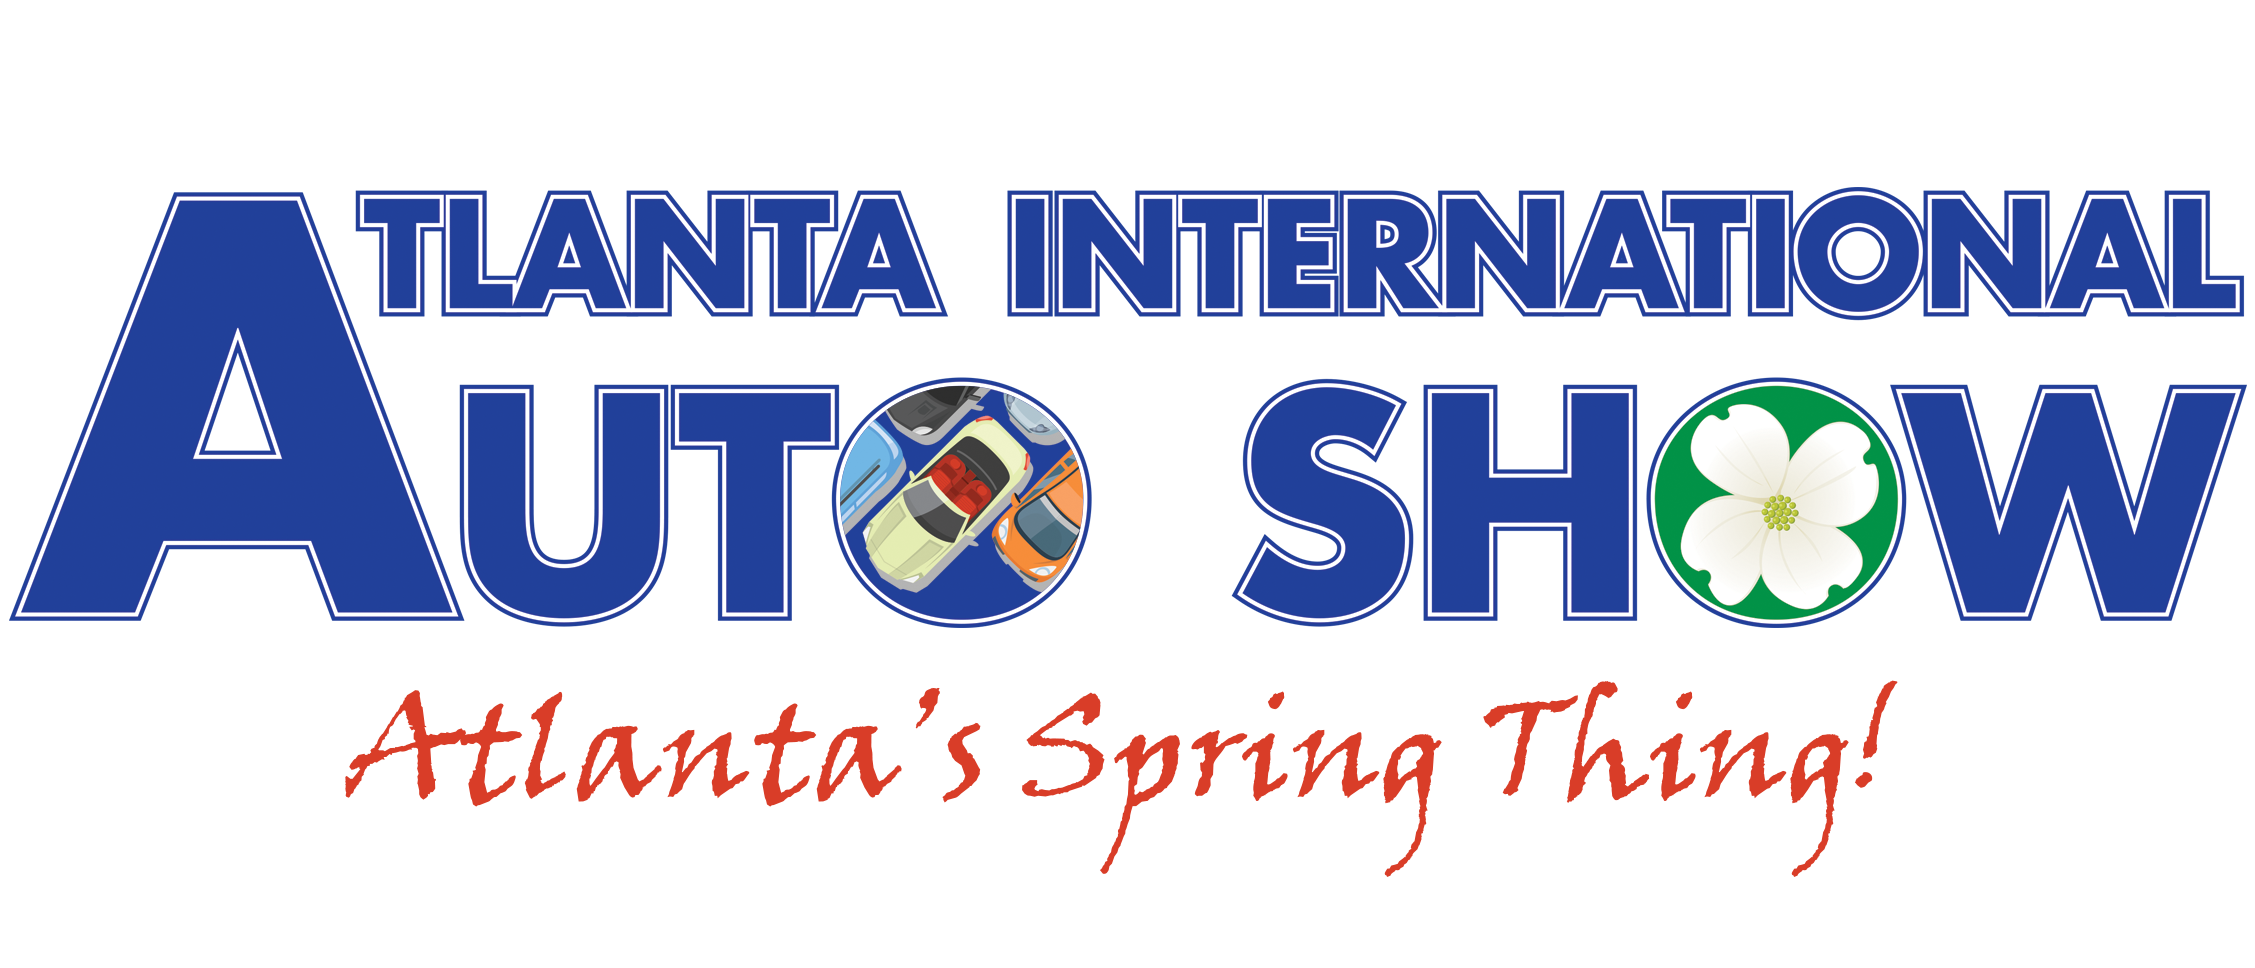 Auto Show logo